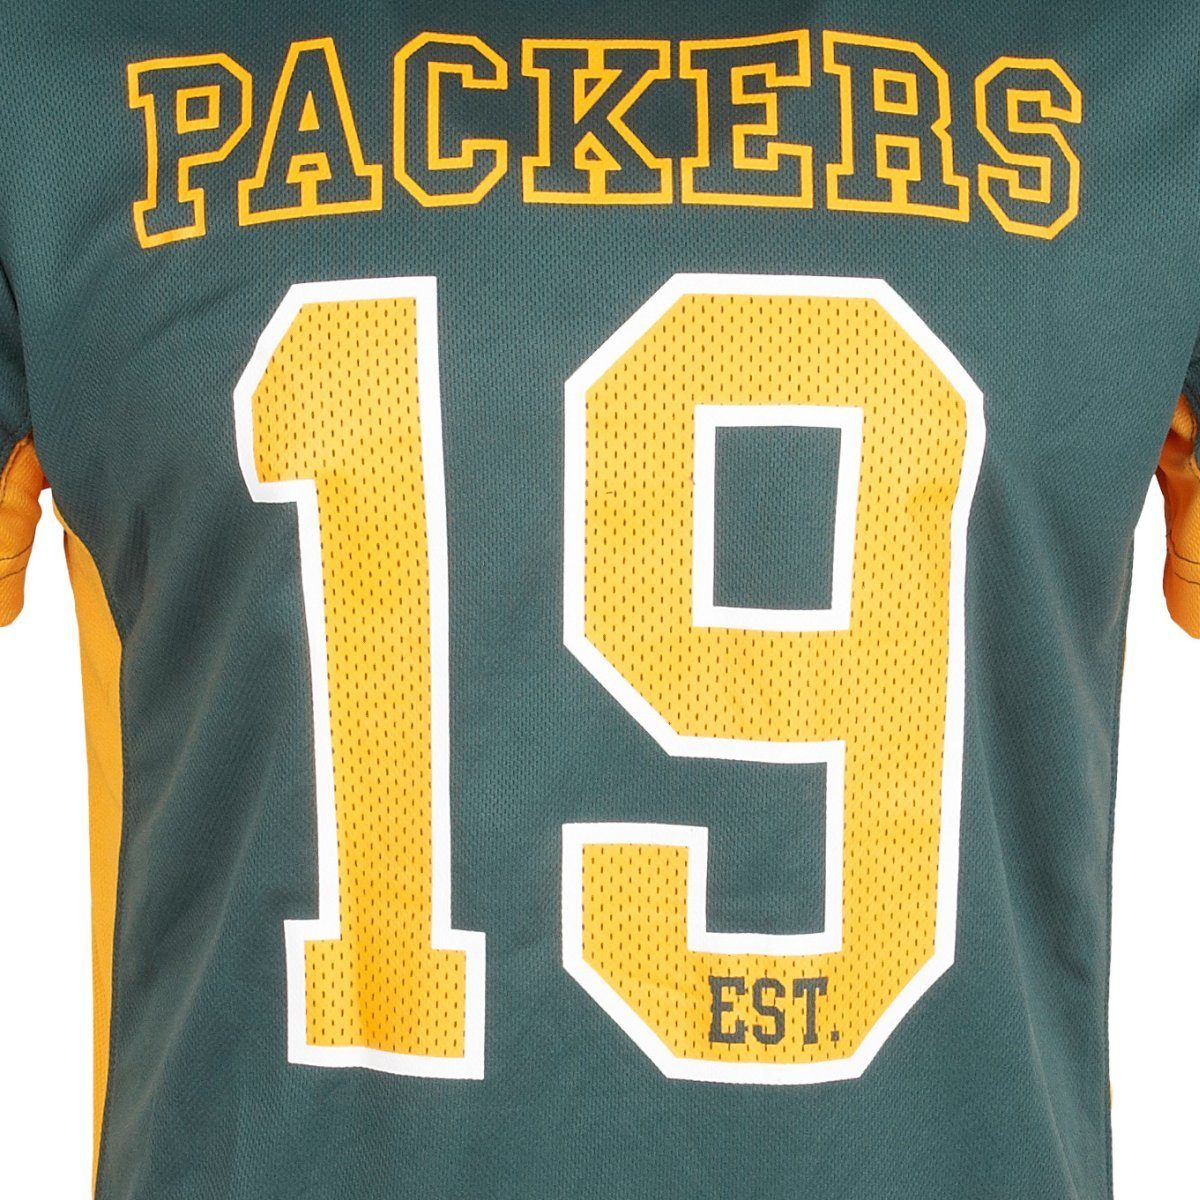 Packers Fanatics NFL Print-Shirt Bay Green Jersey